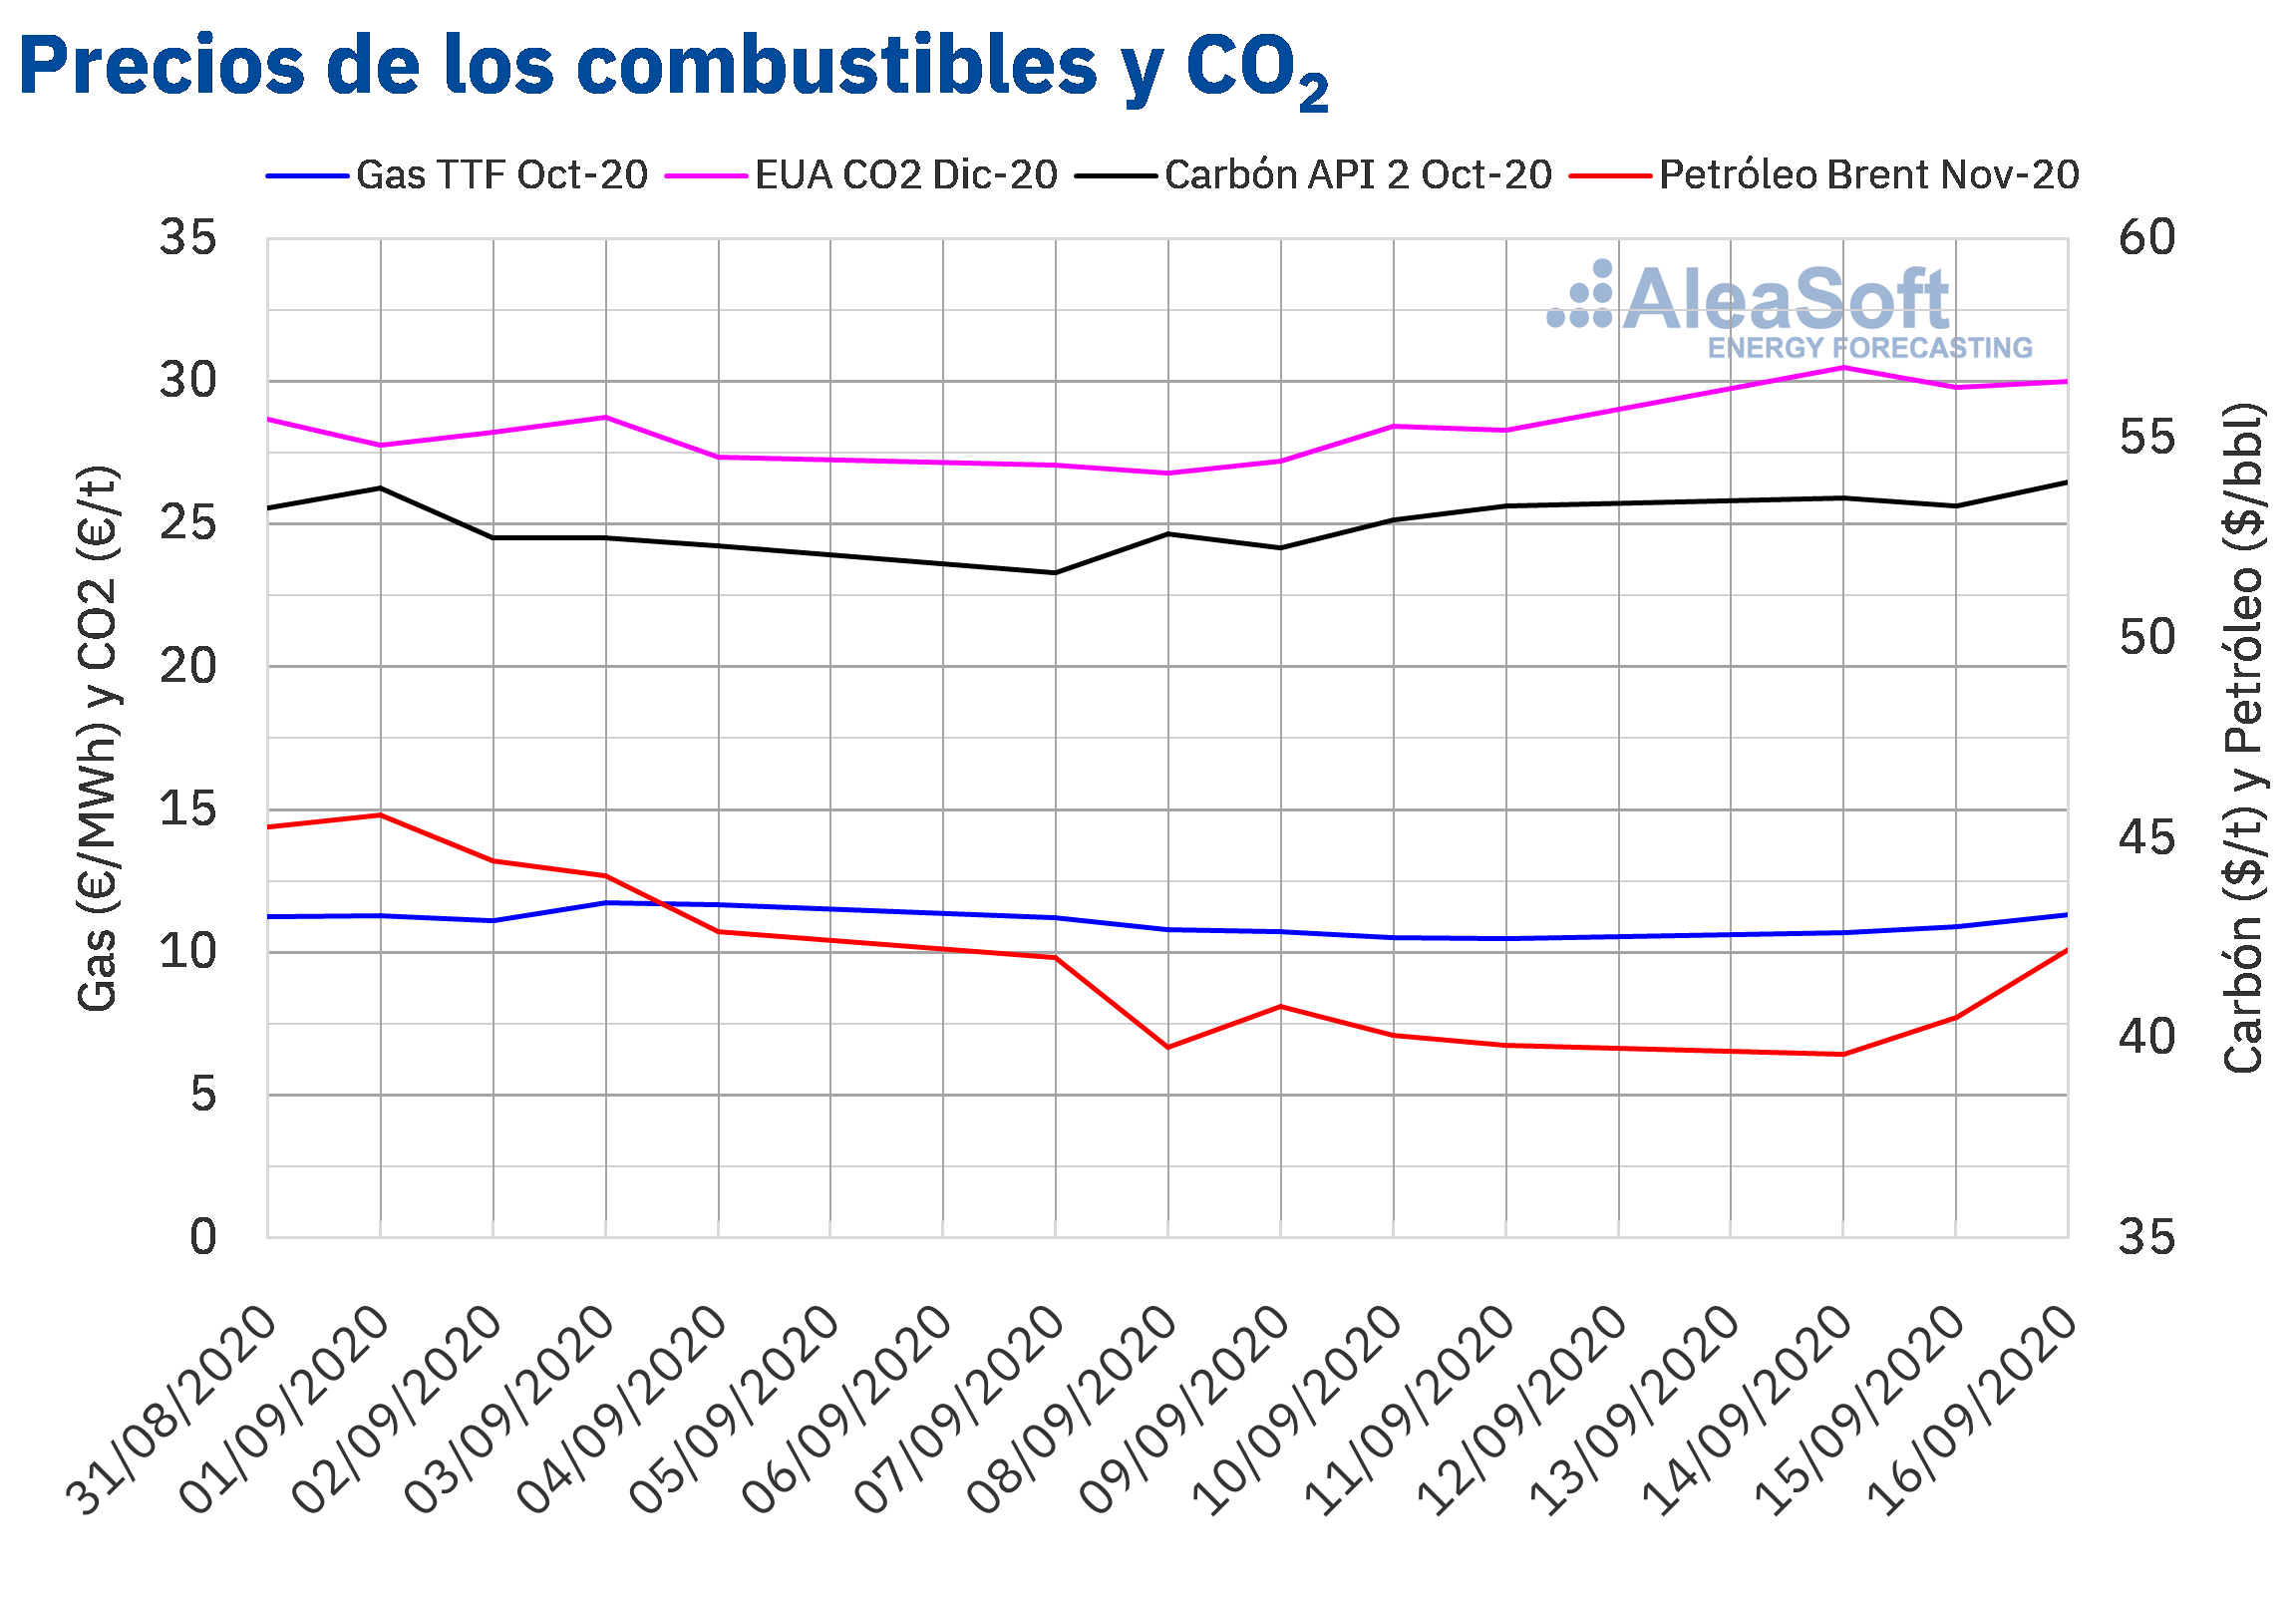 AleaSoft - Precios de gas carbón Brent y CO2